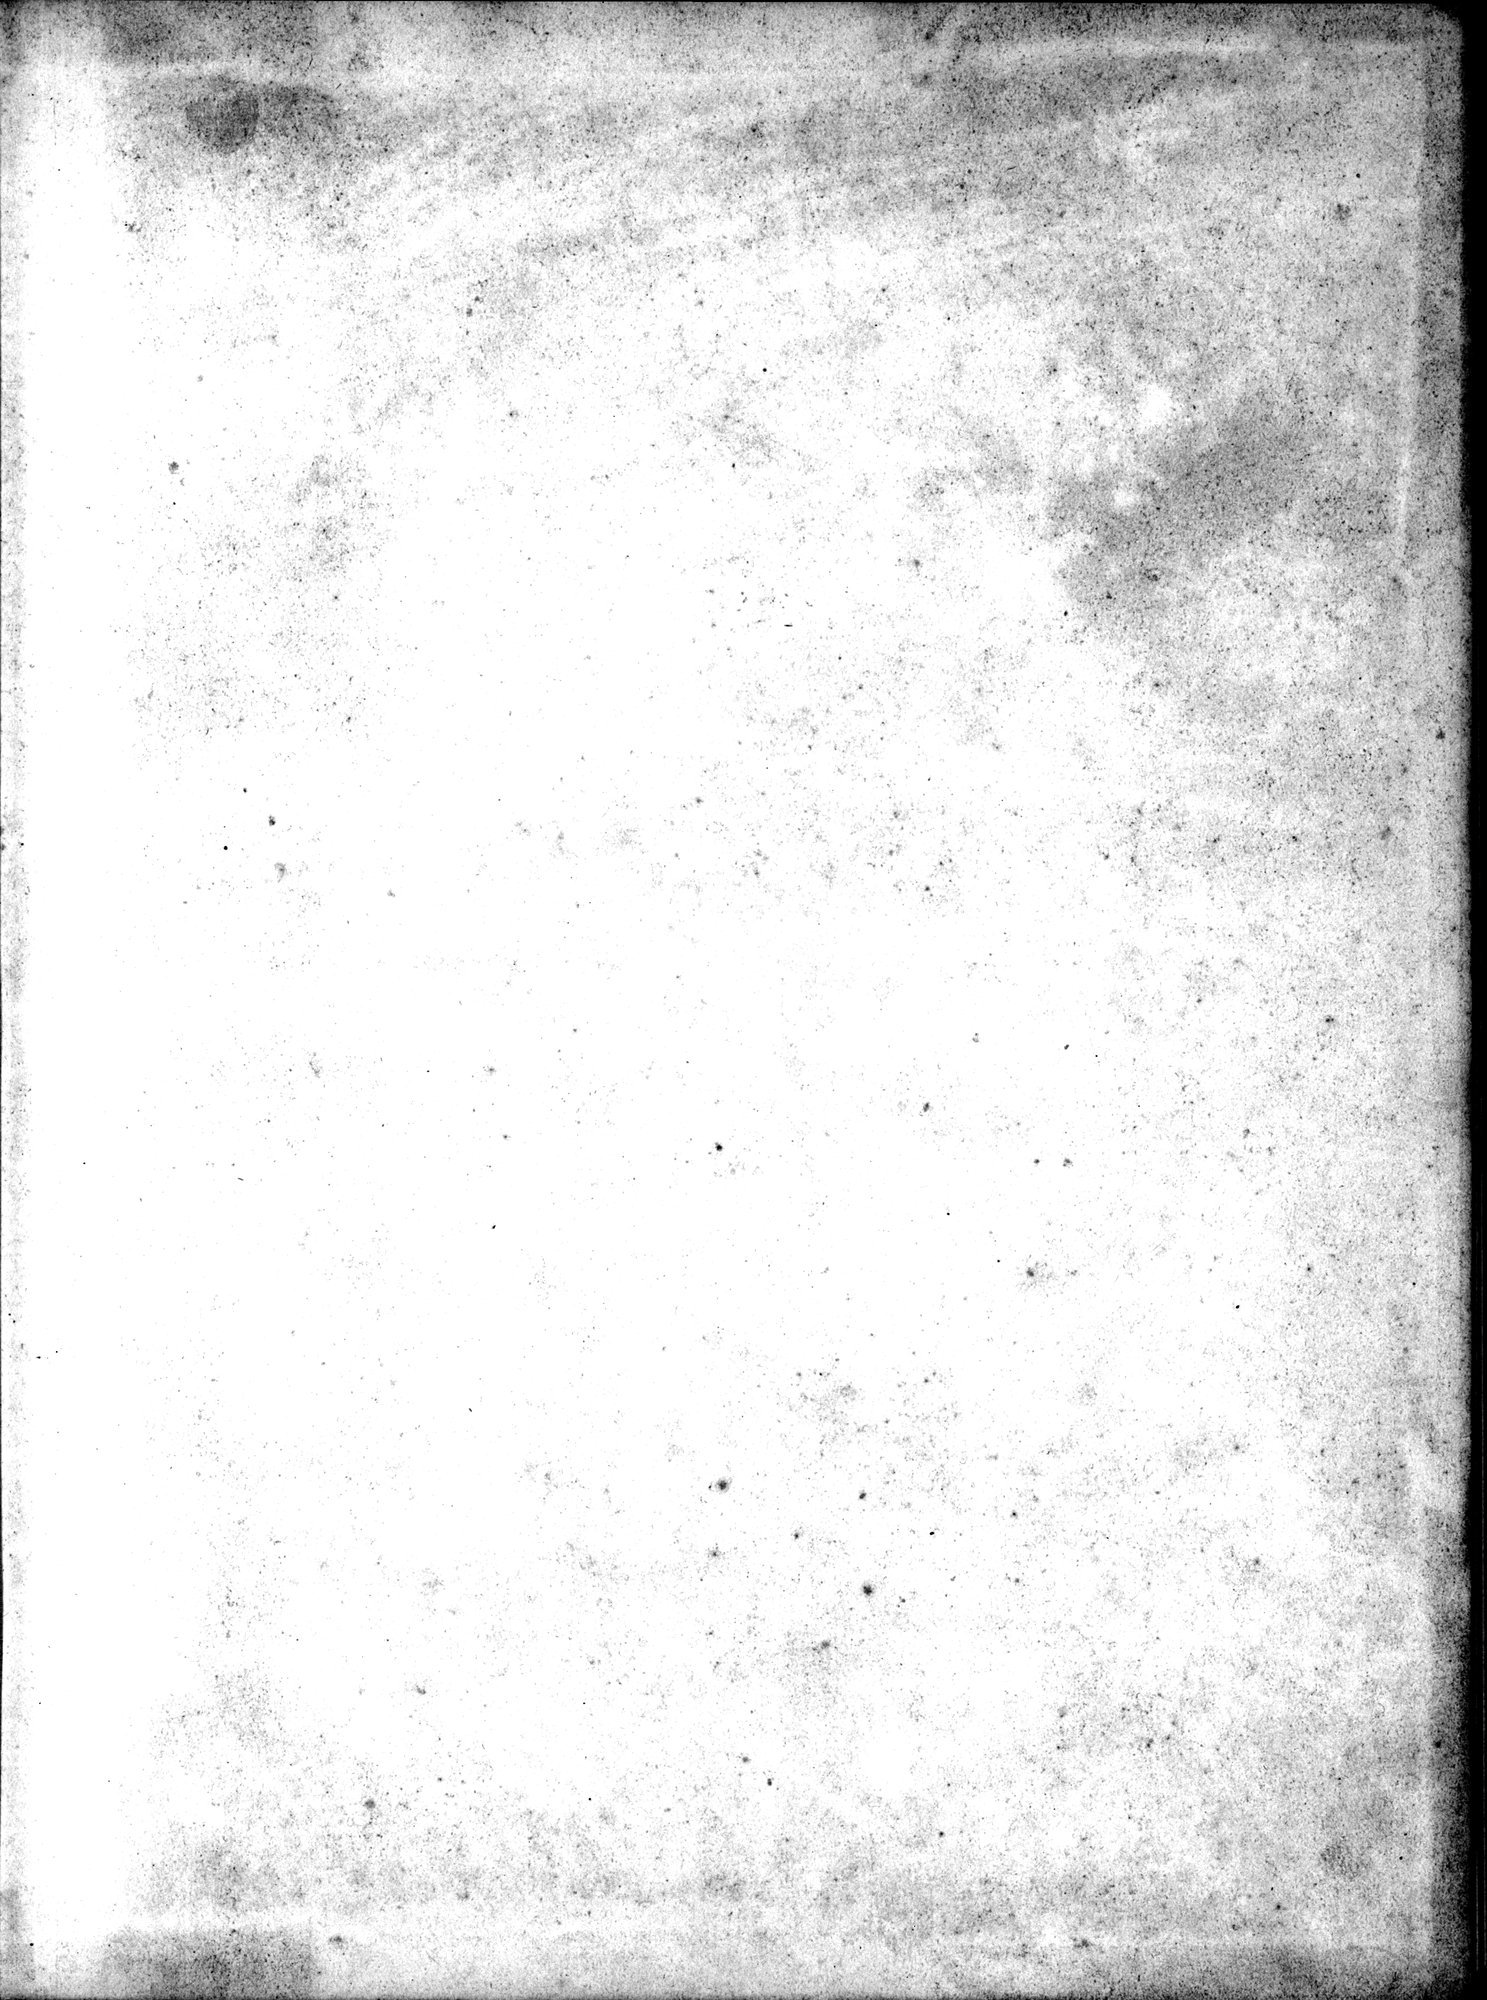 Die Chinesischen Handschriften- und sonstigen Kleinfunde Sven Hedins in Lou-lan : vol.1 / Page 3 (Grayscale High Resolution Image)